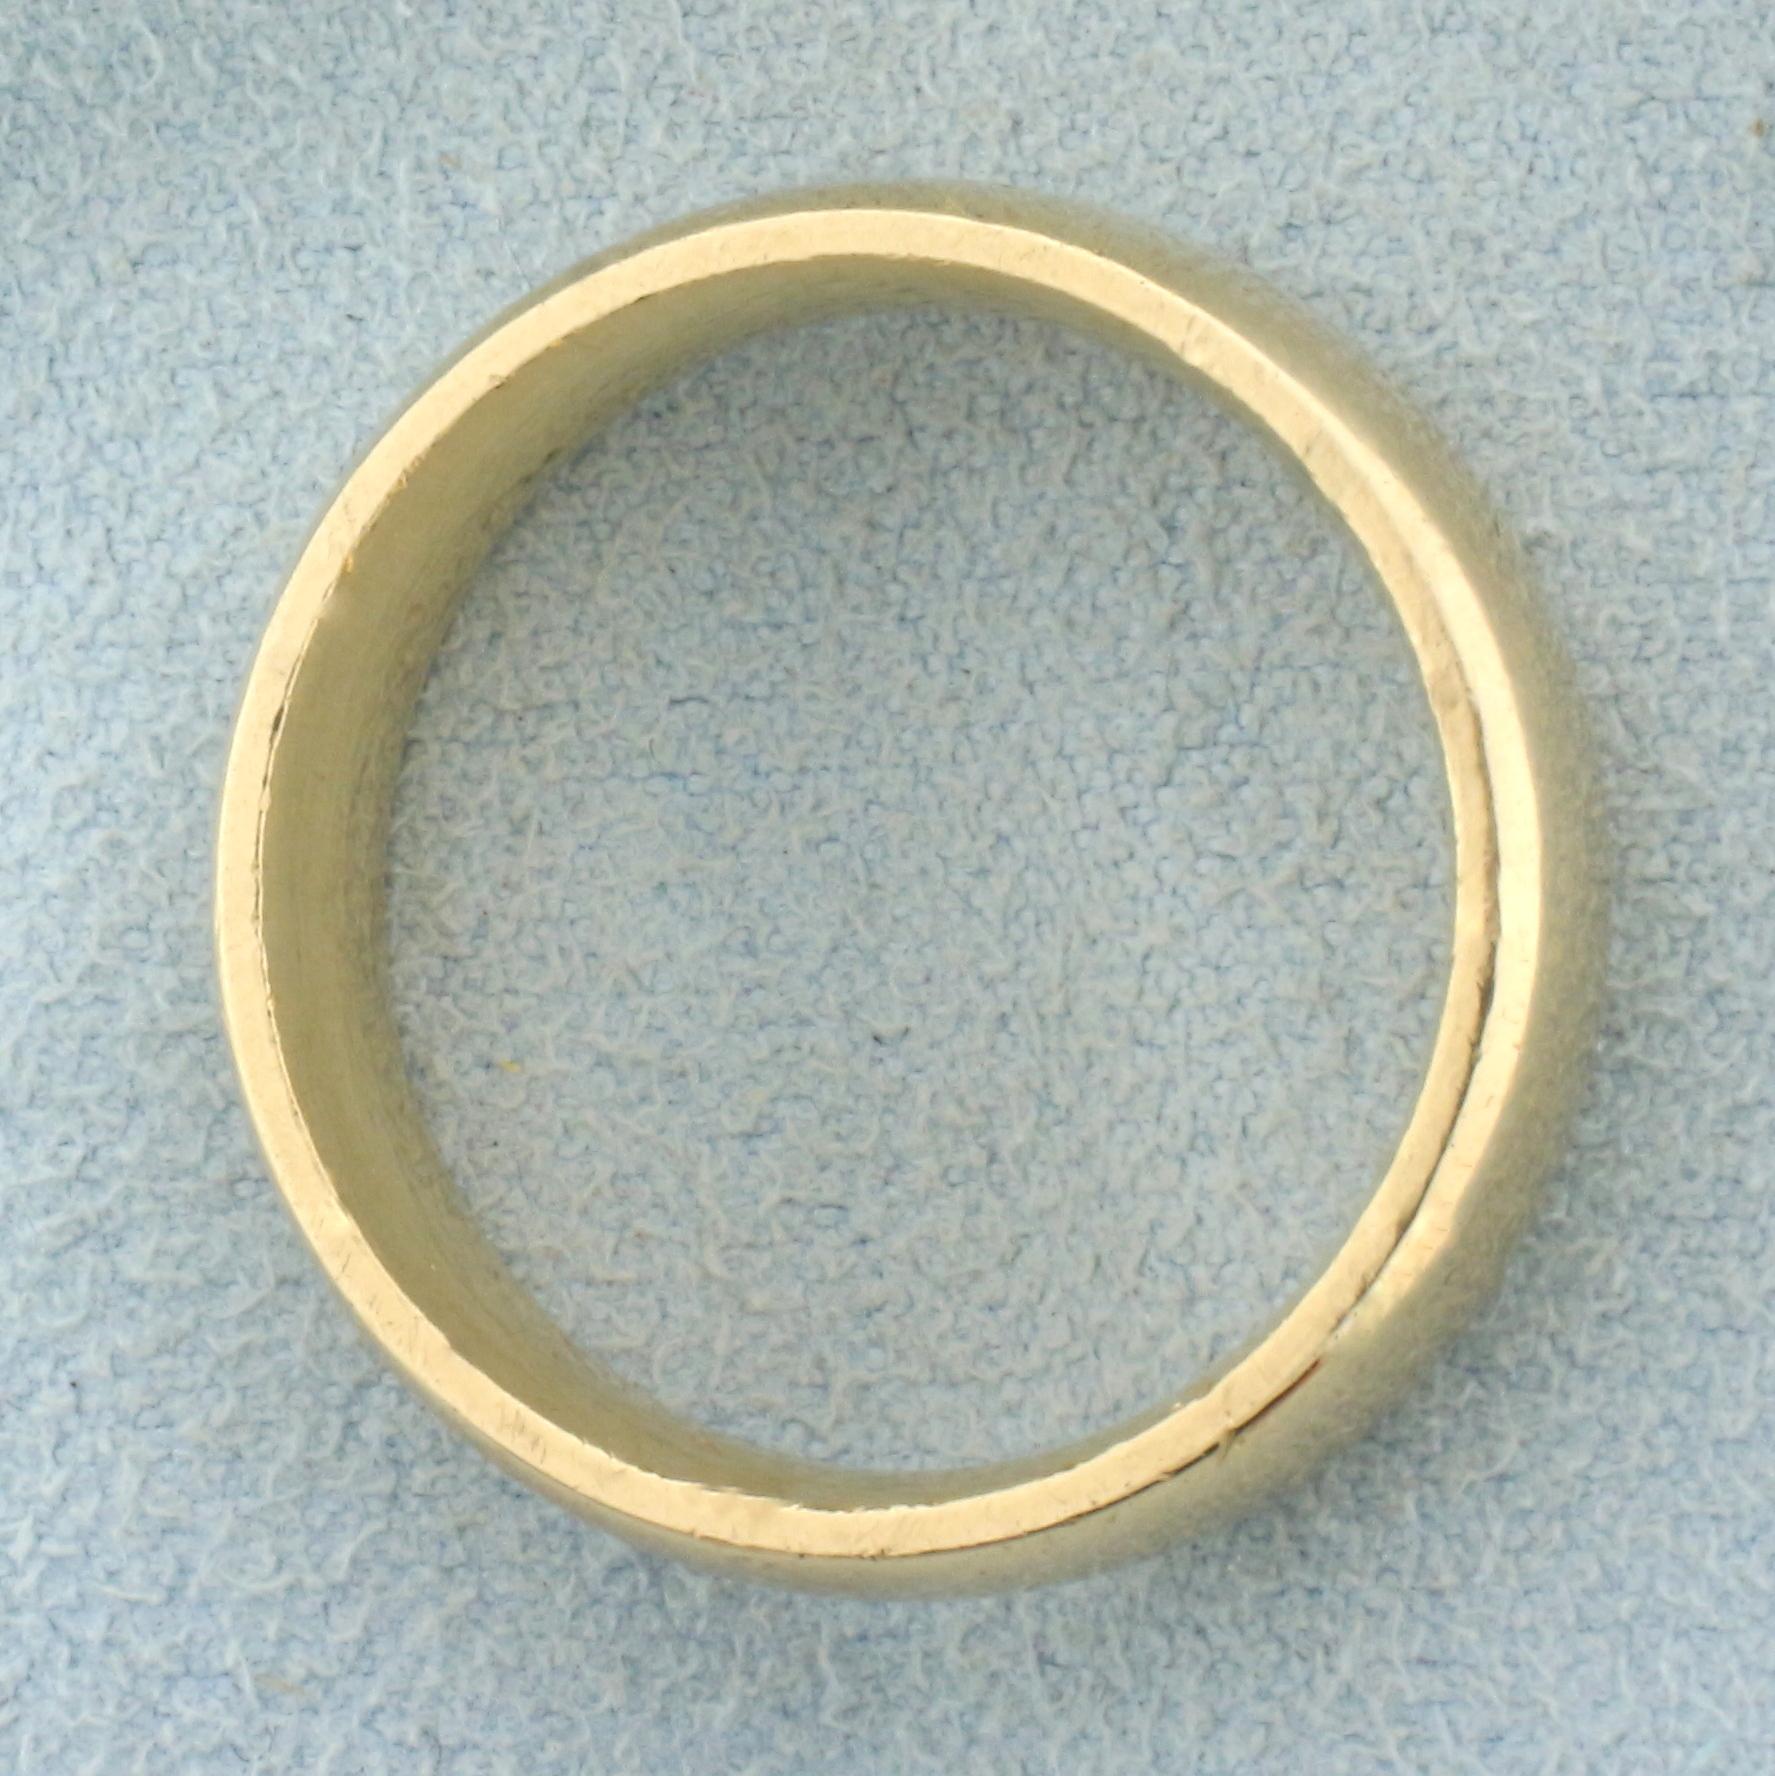 Men's Wedding Band Ring In 14k Yellow Gold